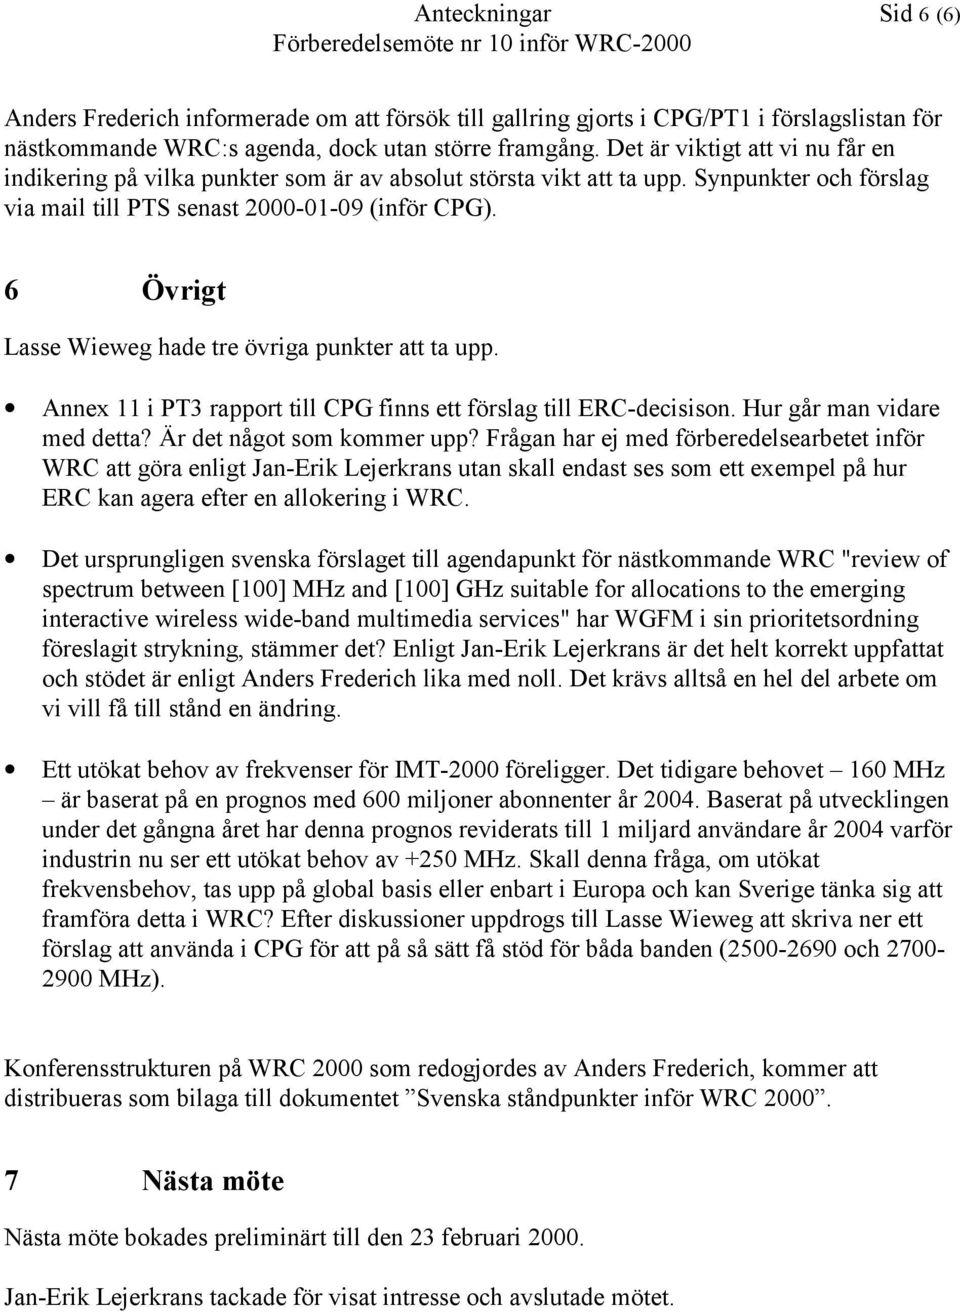 6 Övrigt Lasse Wieweg hade tre övriga punkter att ta upp. Annex 11 i PT3 rapport till CPG finns ett förslag till ERC-decisison. Hur går man vidare med detta? Är det något som kommer upp?